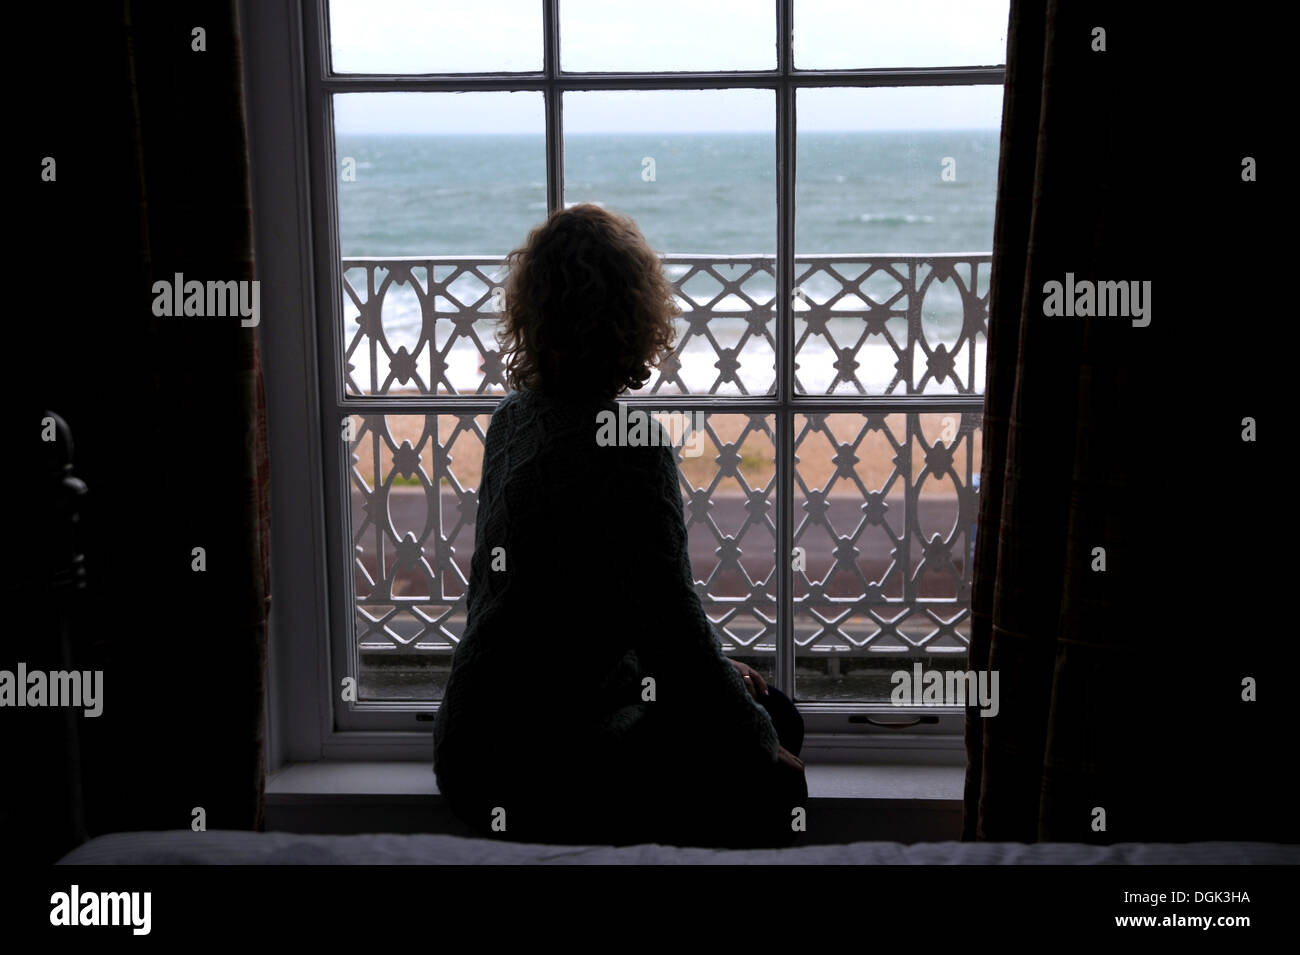 Femme Seule A La Solitude D Une Fenetre De La Chambre Se Sentir Triste Photo Stock Alamy